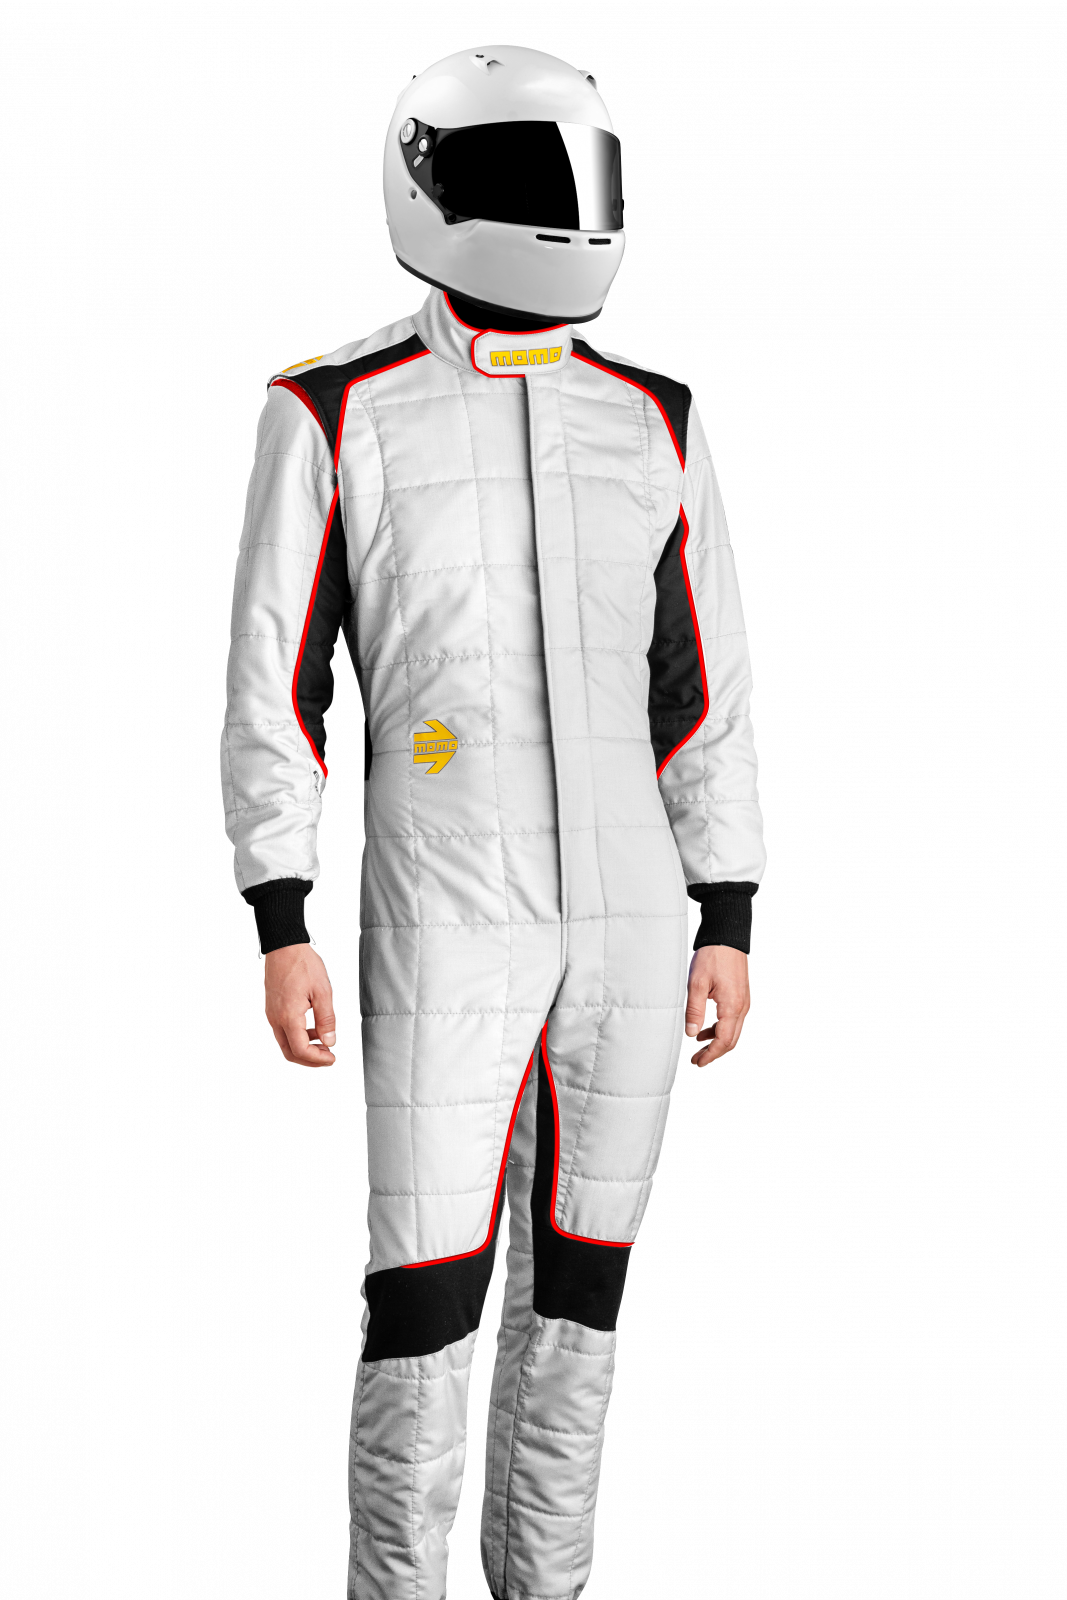 MOMO Corsa Evo White Size 52 Racing Suit TUCOEVOWHT52